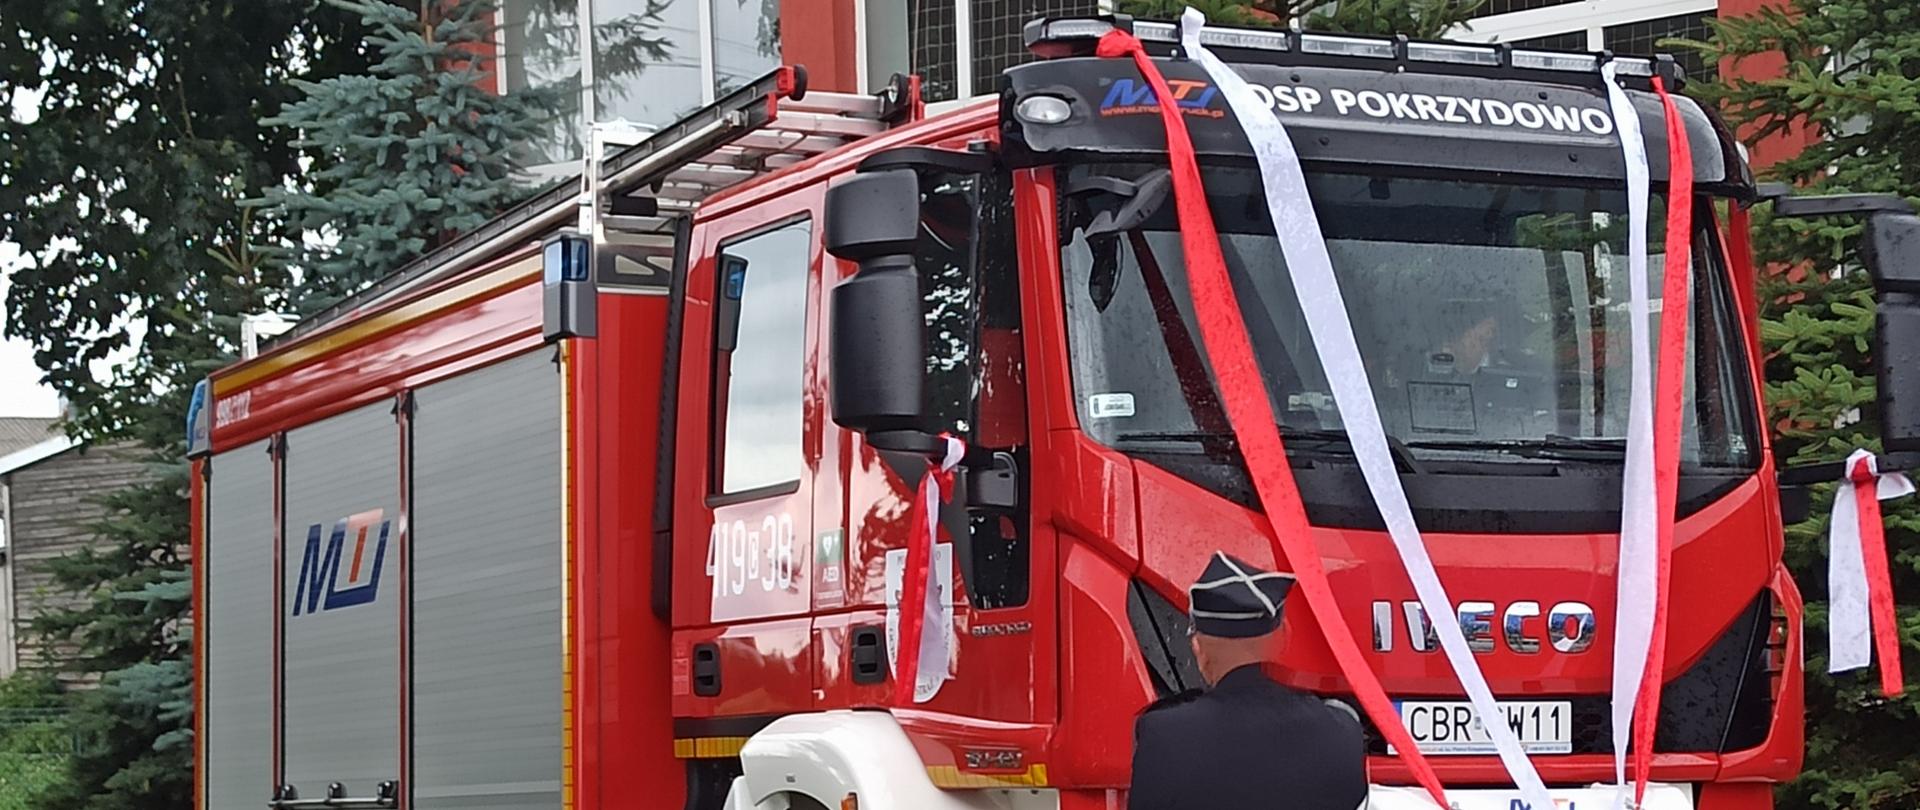 Zdjęcie przedstawia nowy samochód pożarniczy OSP Pokrzydowo